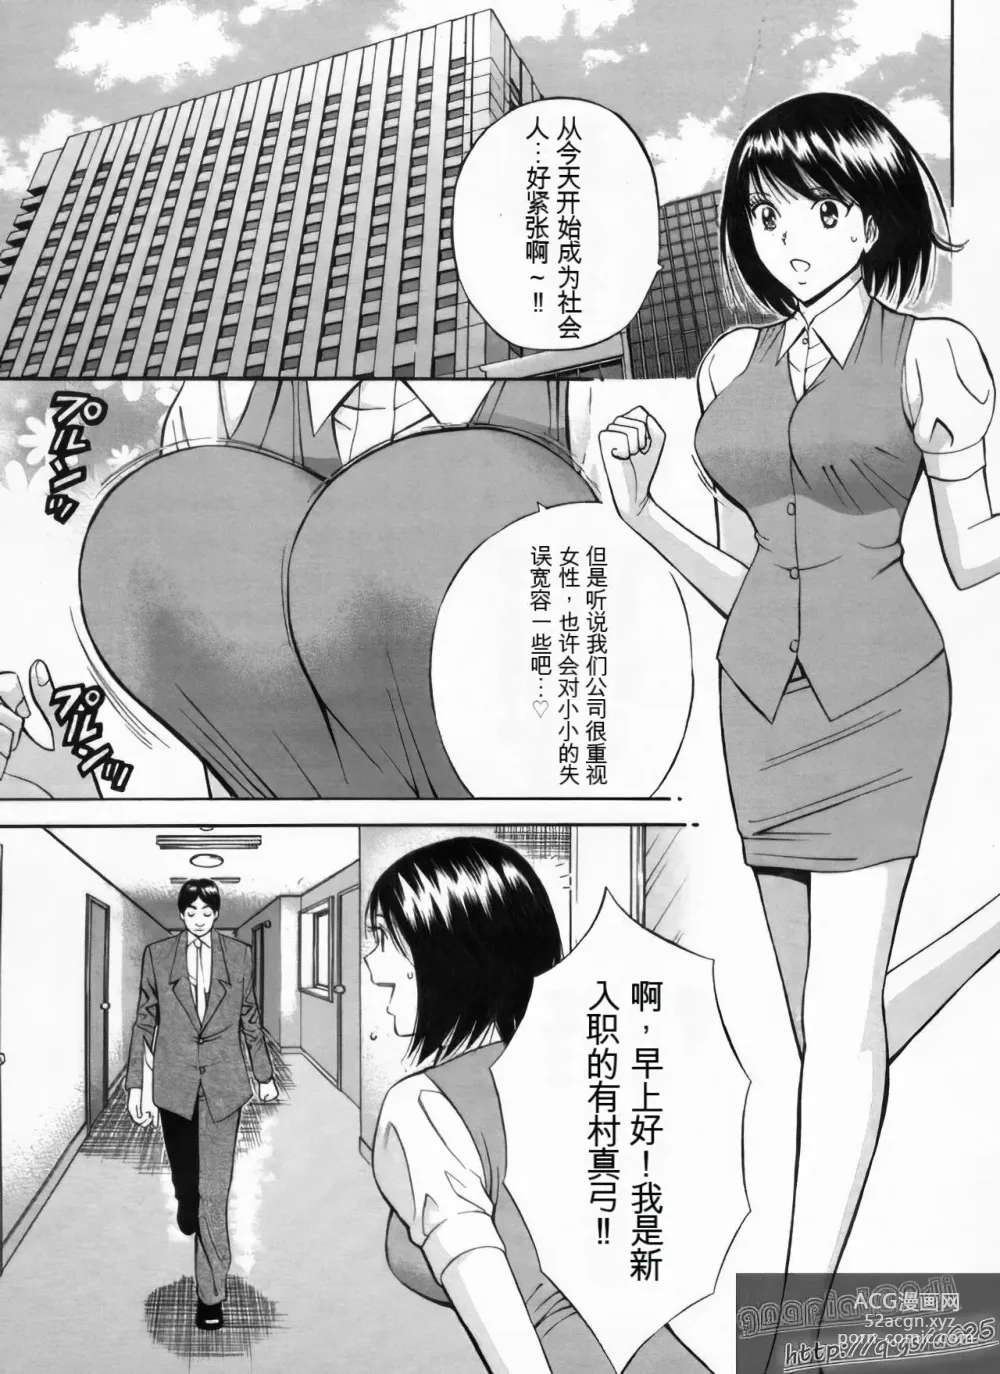 Page 162 of manga Chounyuu Bakunyuu Kabushikigaisha